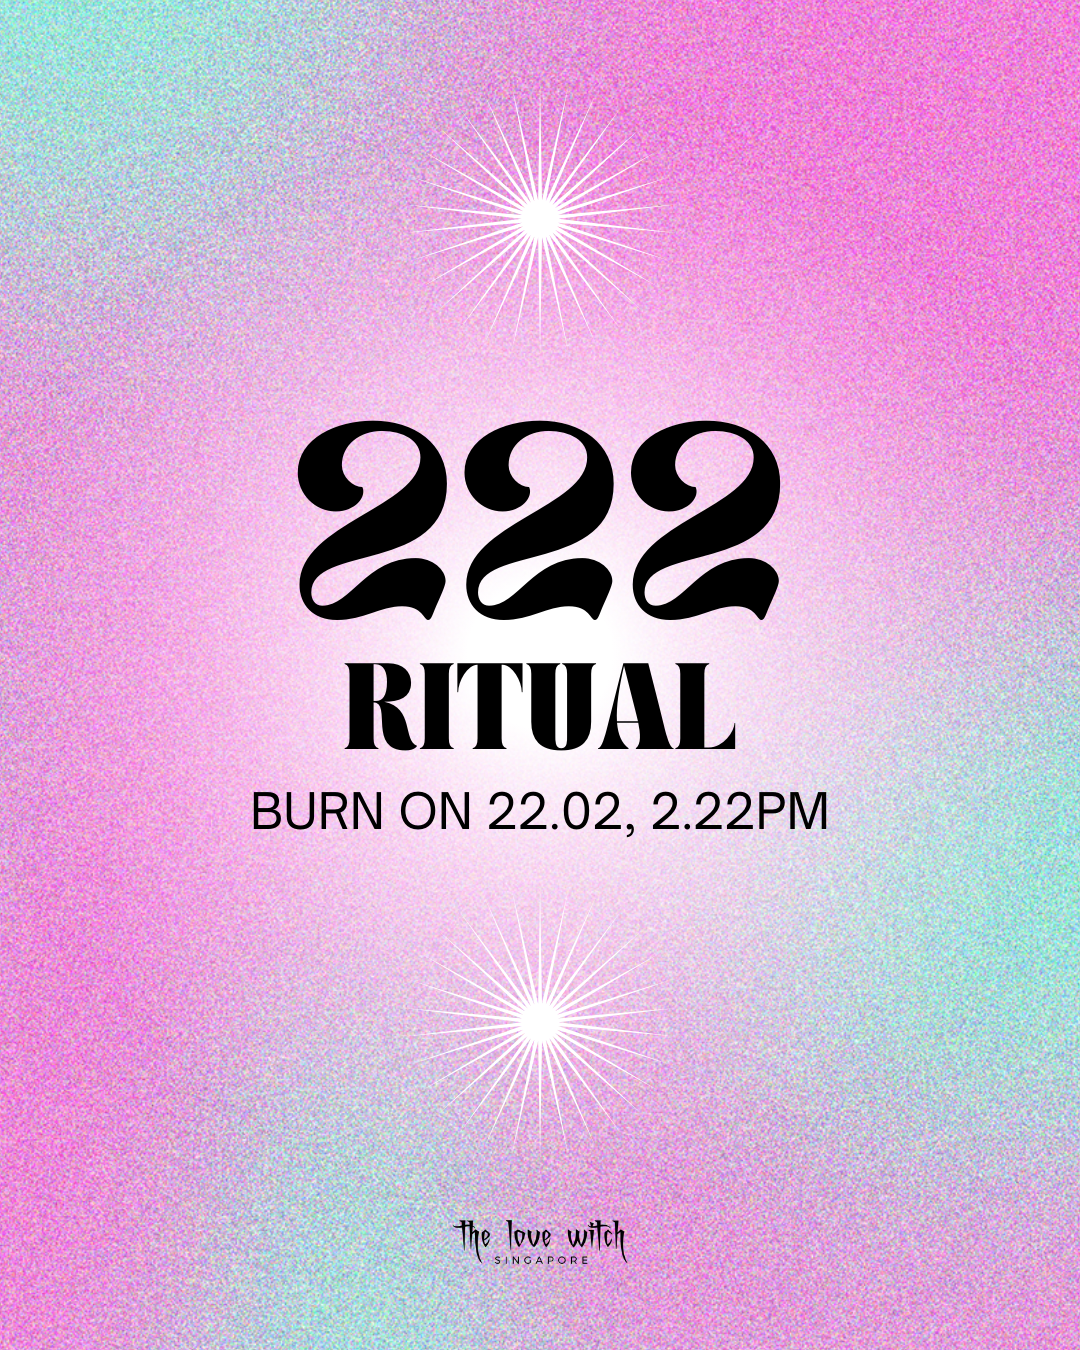 222 Ritual (Burn on 22 February 2:22pm)